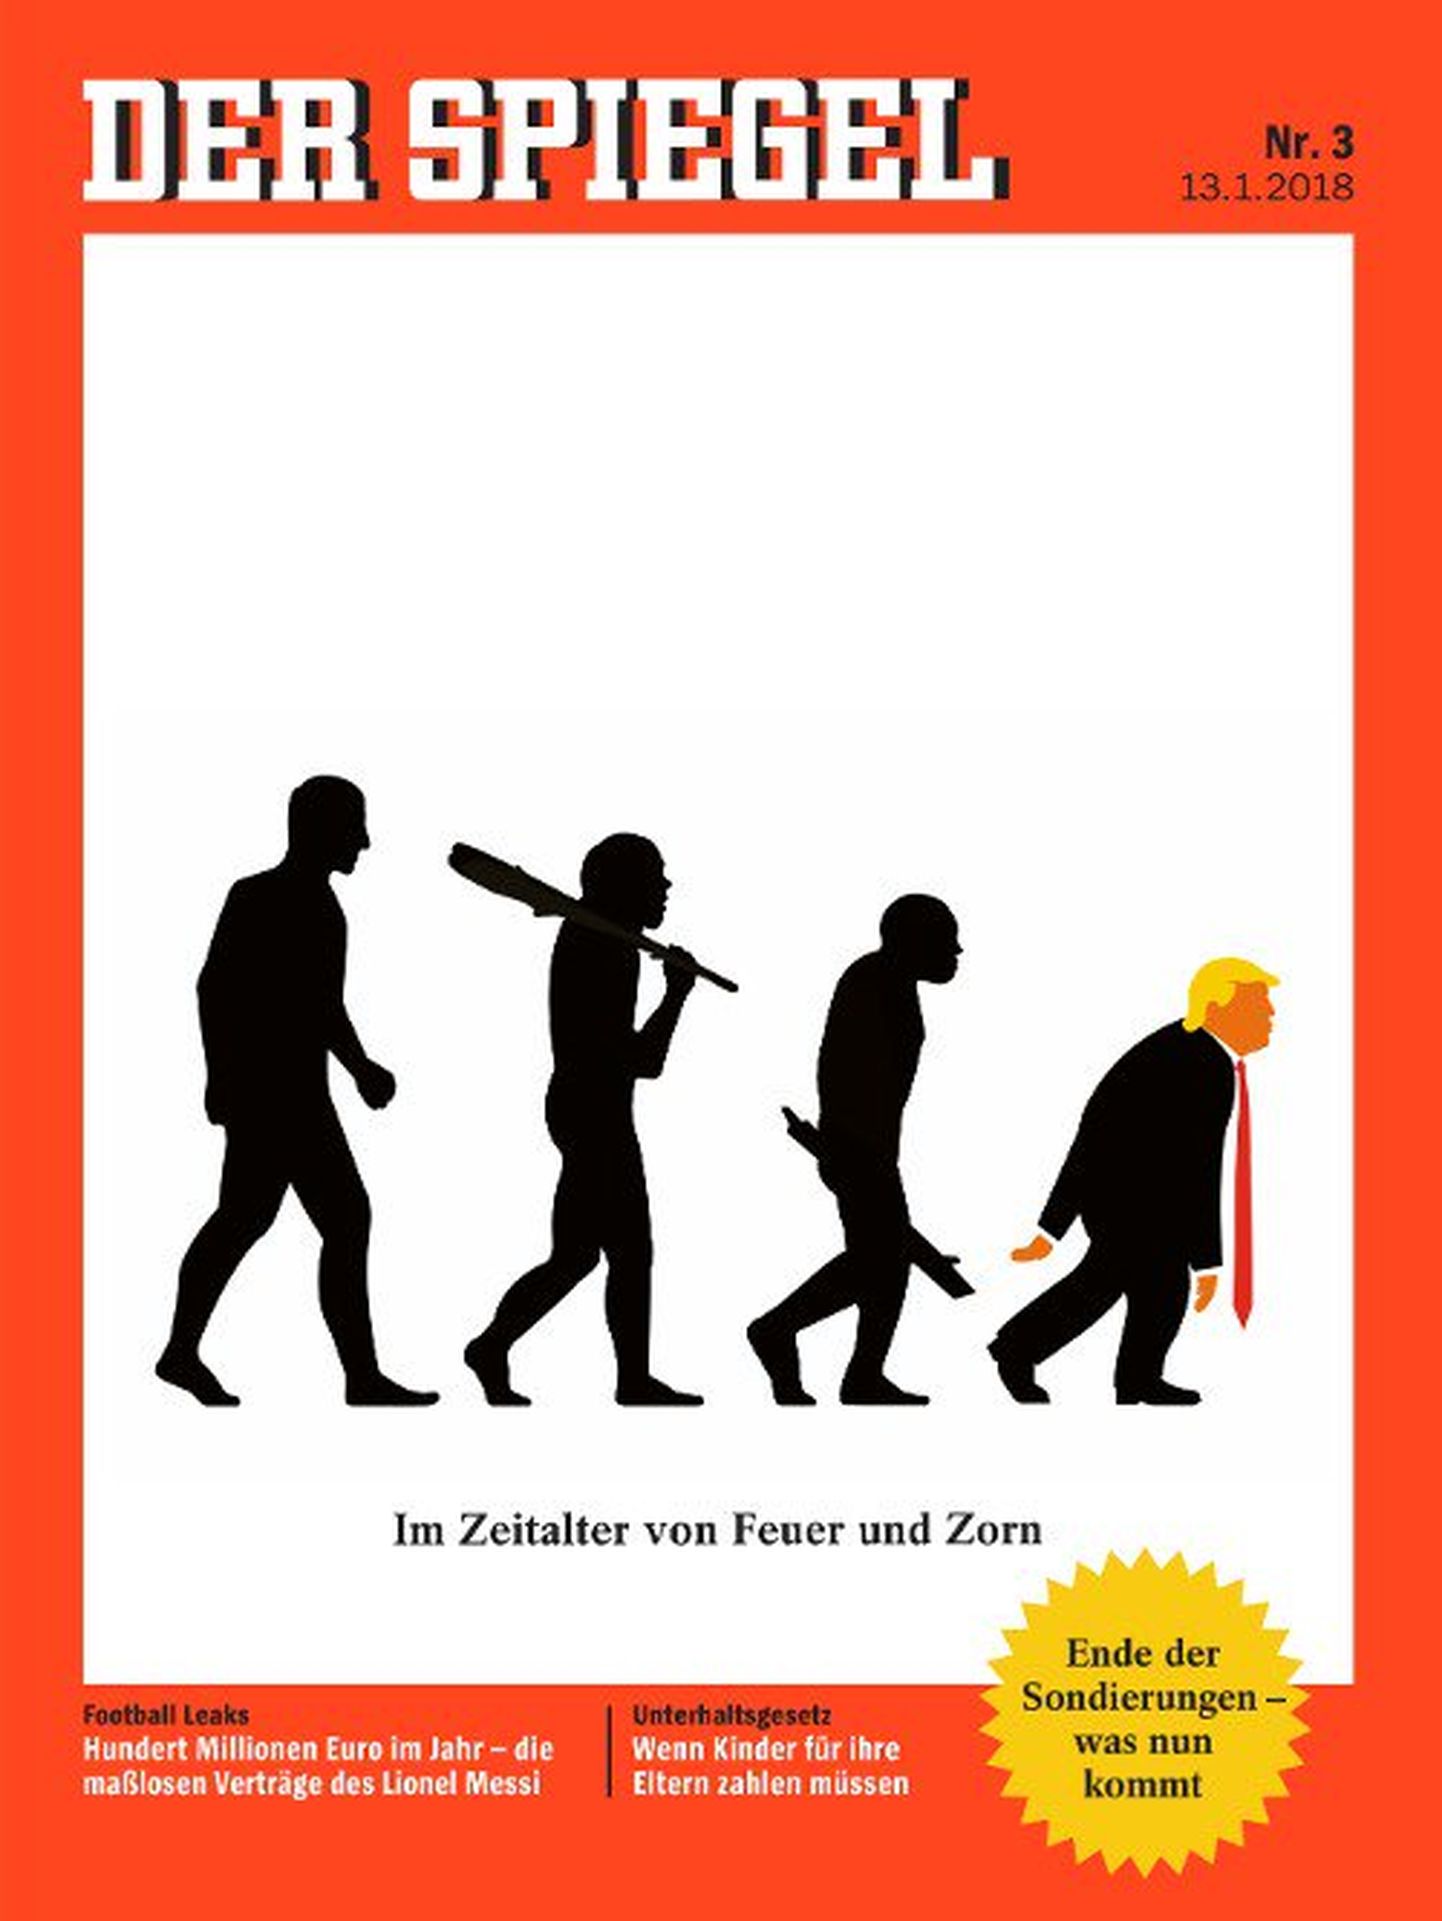 Der Spiegeli esikaas, millel kujutatakse Donald Trumpi madalama eluvormina.